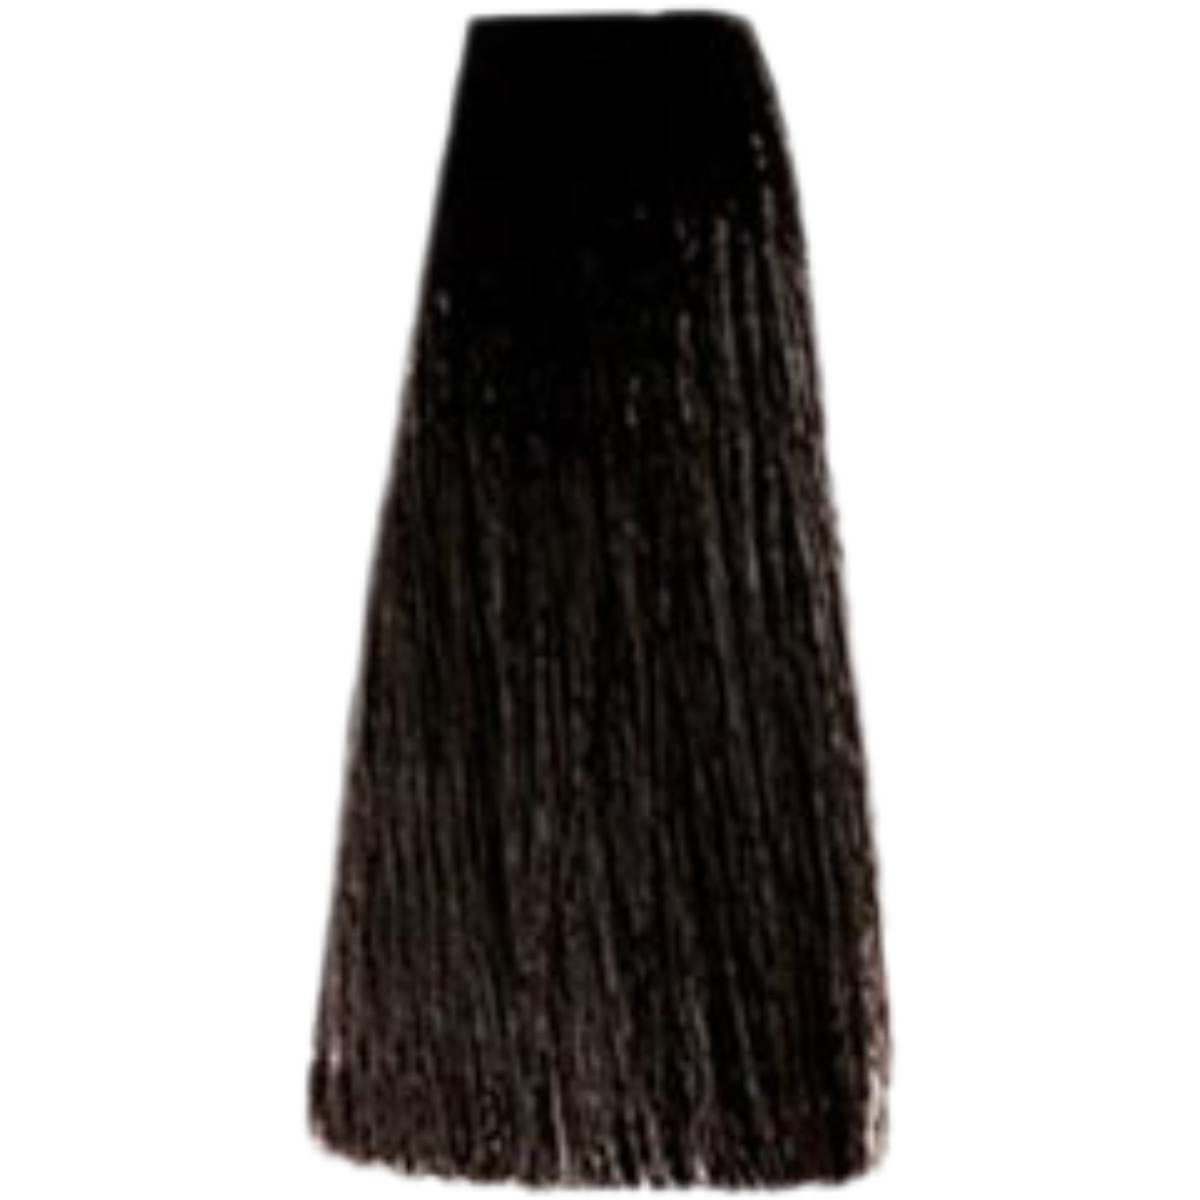 צבע שיער 5.1 LIGHT ASH BROWN פארמויטה FarmaVita צבע לשיער 100 גרם